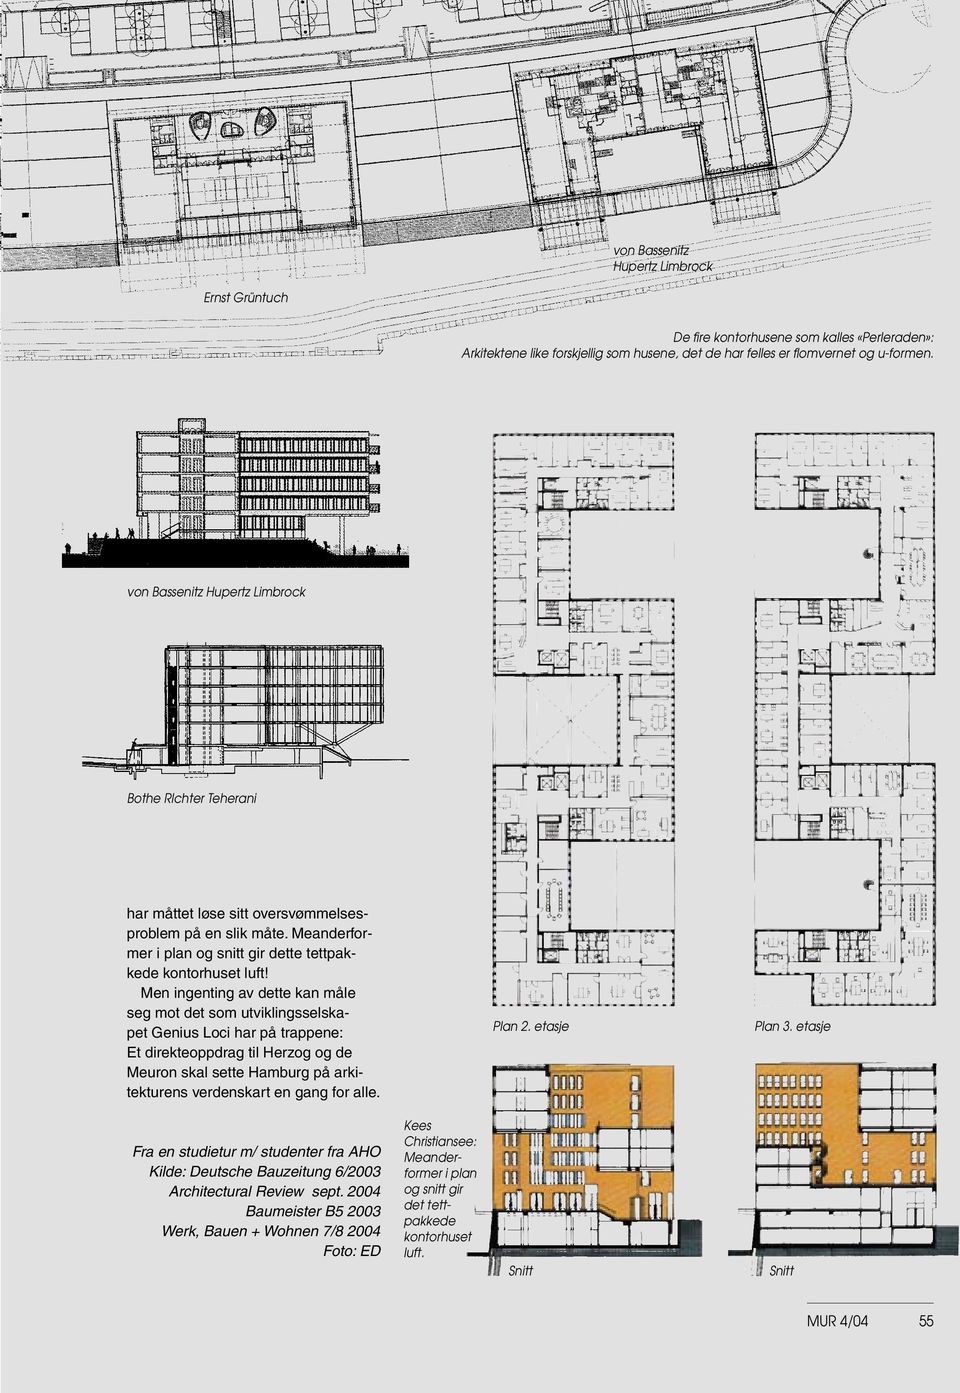 Men ingenting av dette kan måle seg mot det som utviklingsselskapet Genius Loci har på trappene: Et direkteoppdrag til Herzog og de Meuron skal sette Hamburg på arkitekturens verdenskart en gang for